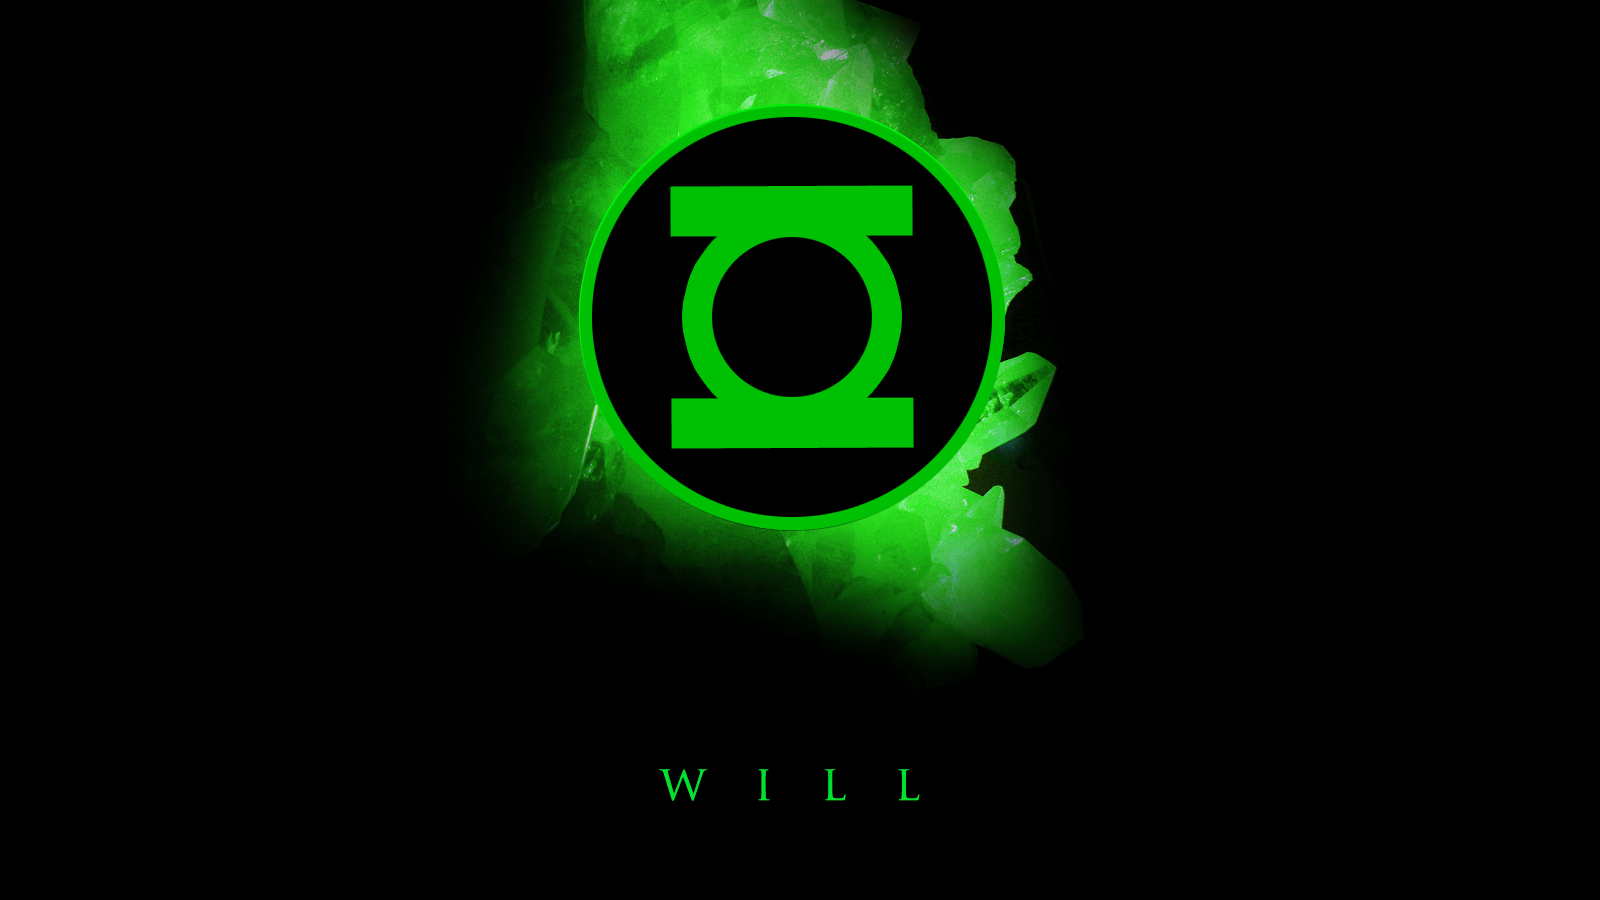 Cool Green Logo - Cool Green Lantern Symbol Wallpaper | PaperPull